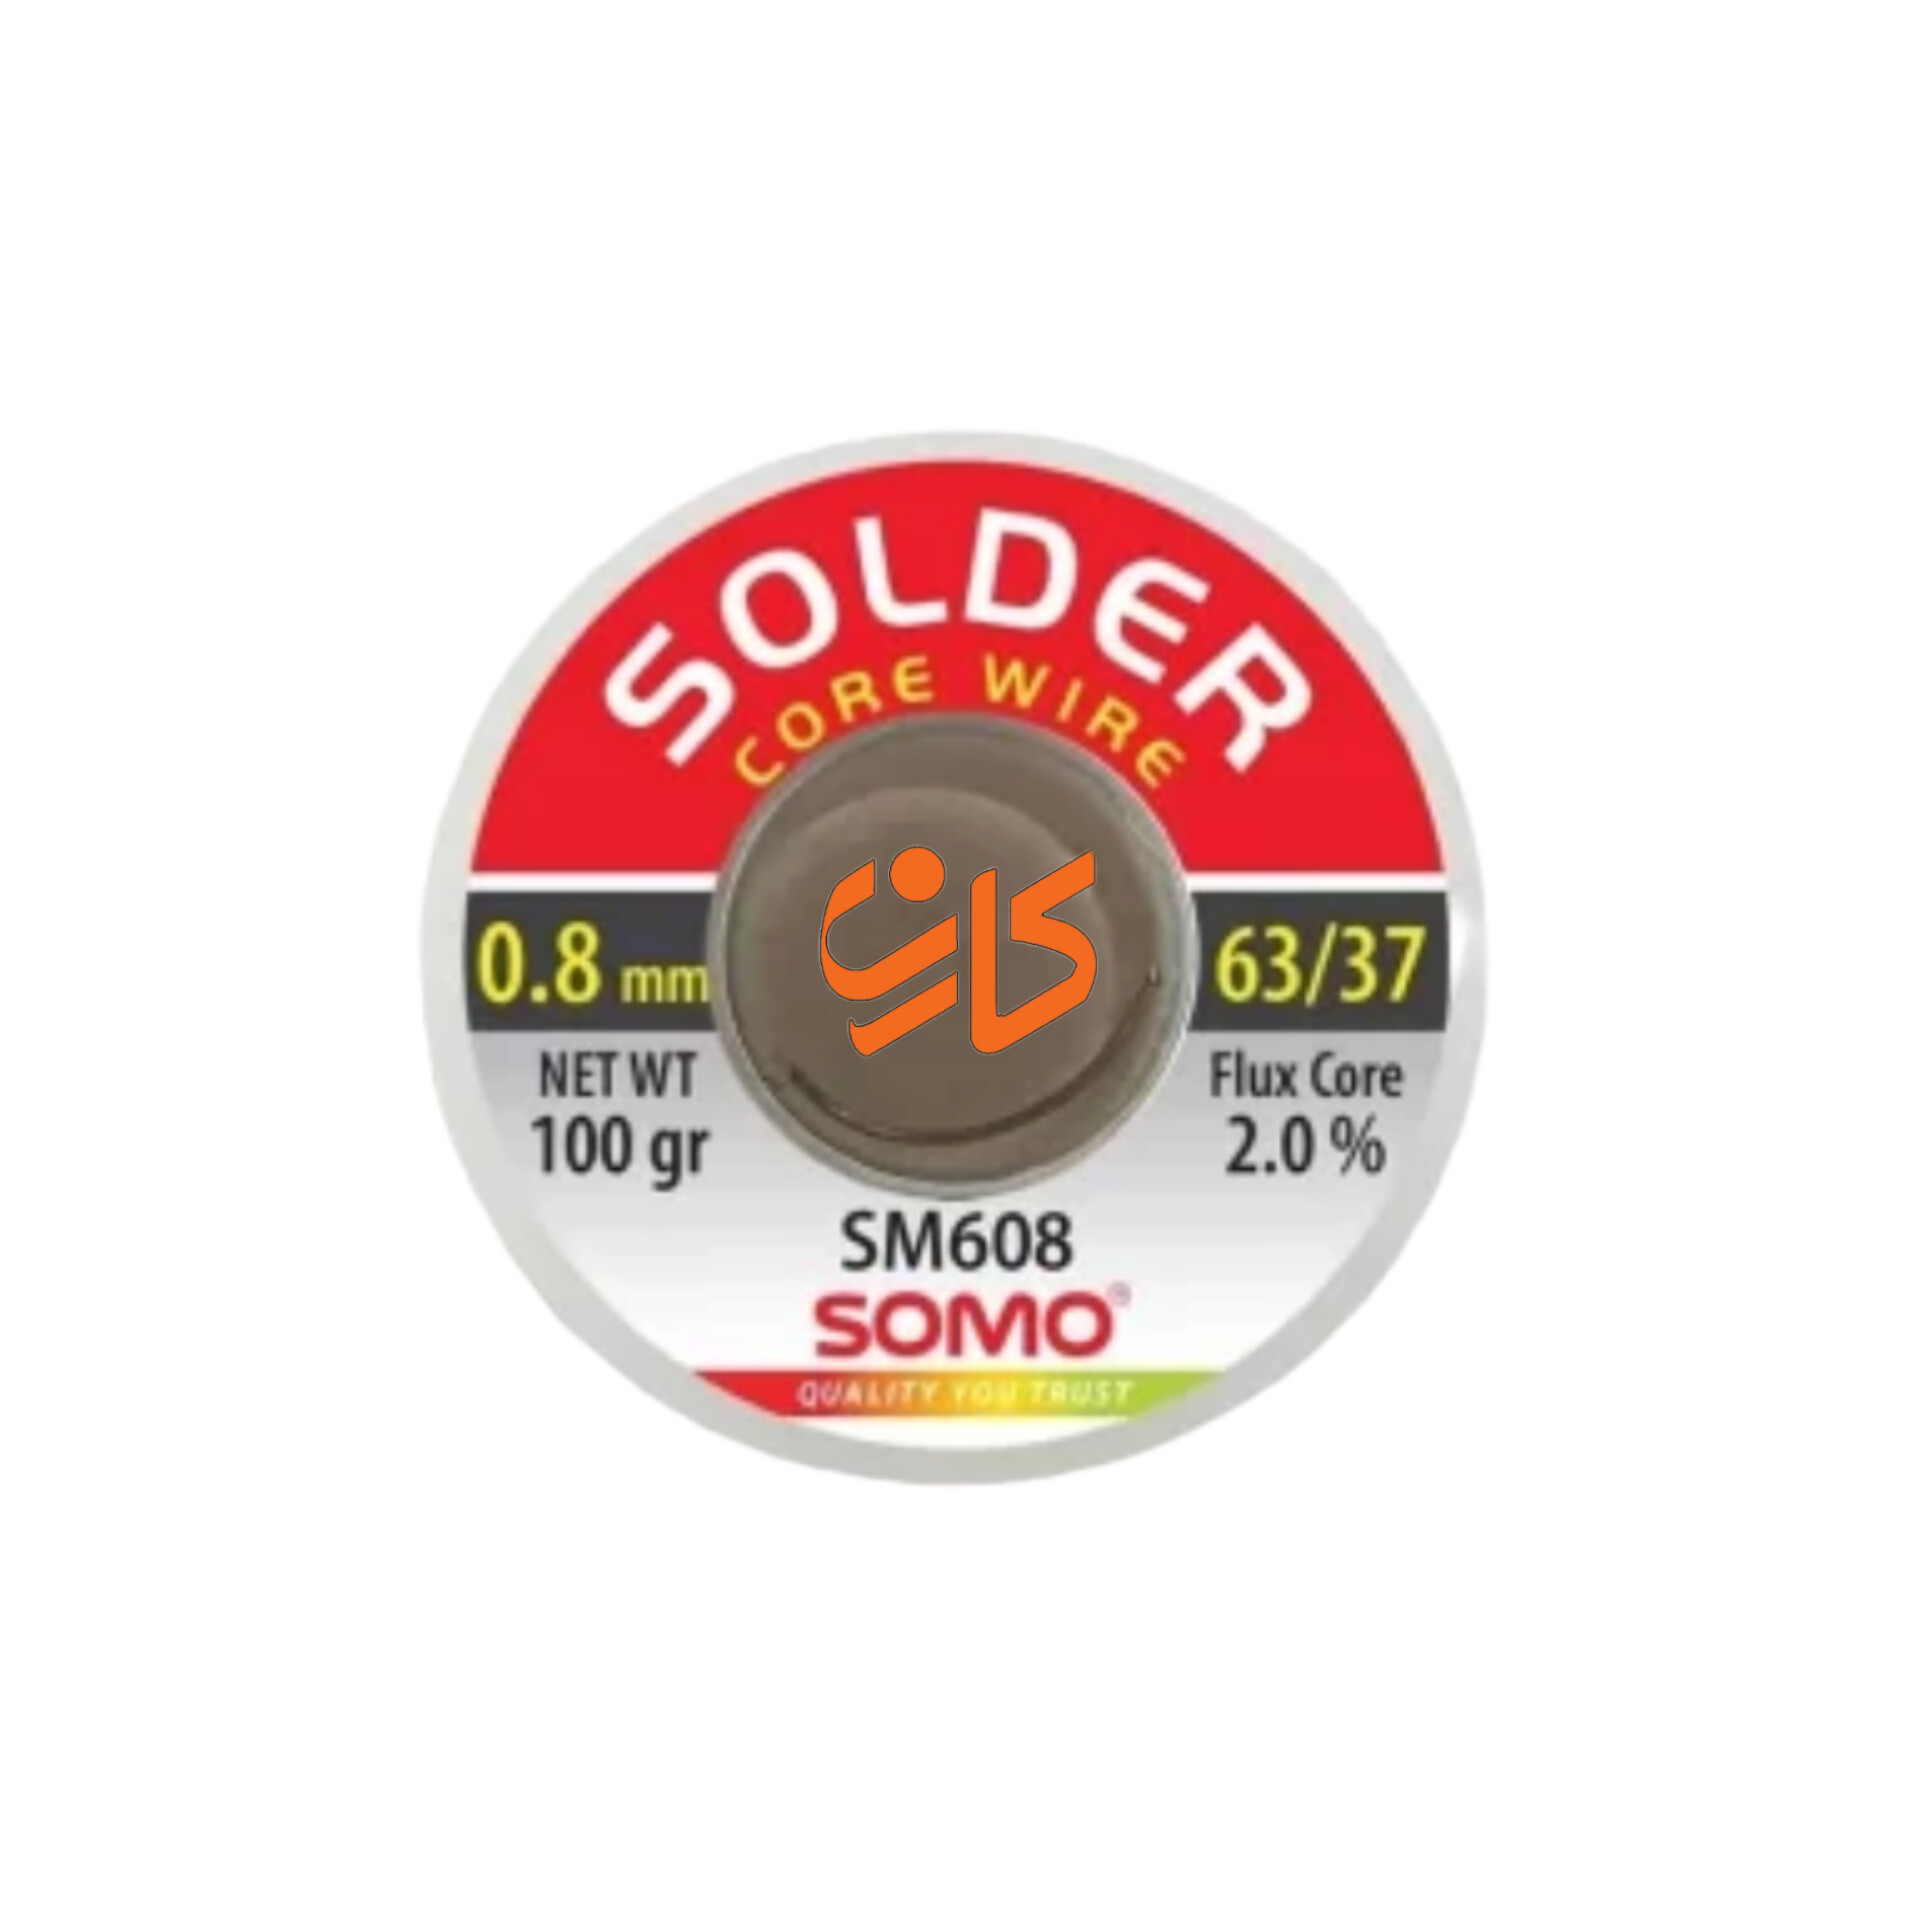 سیم لحیم سومو 0.8 میلیمتر 100 گرم مدل SOMO SM608